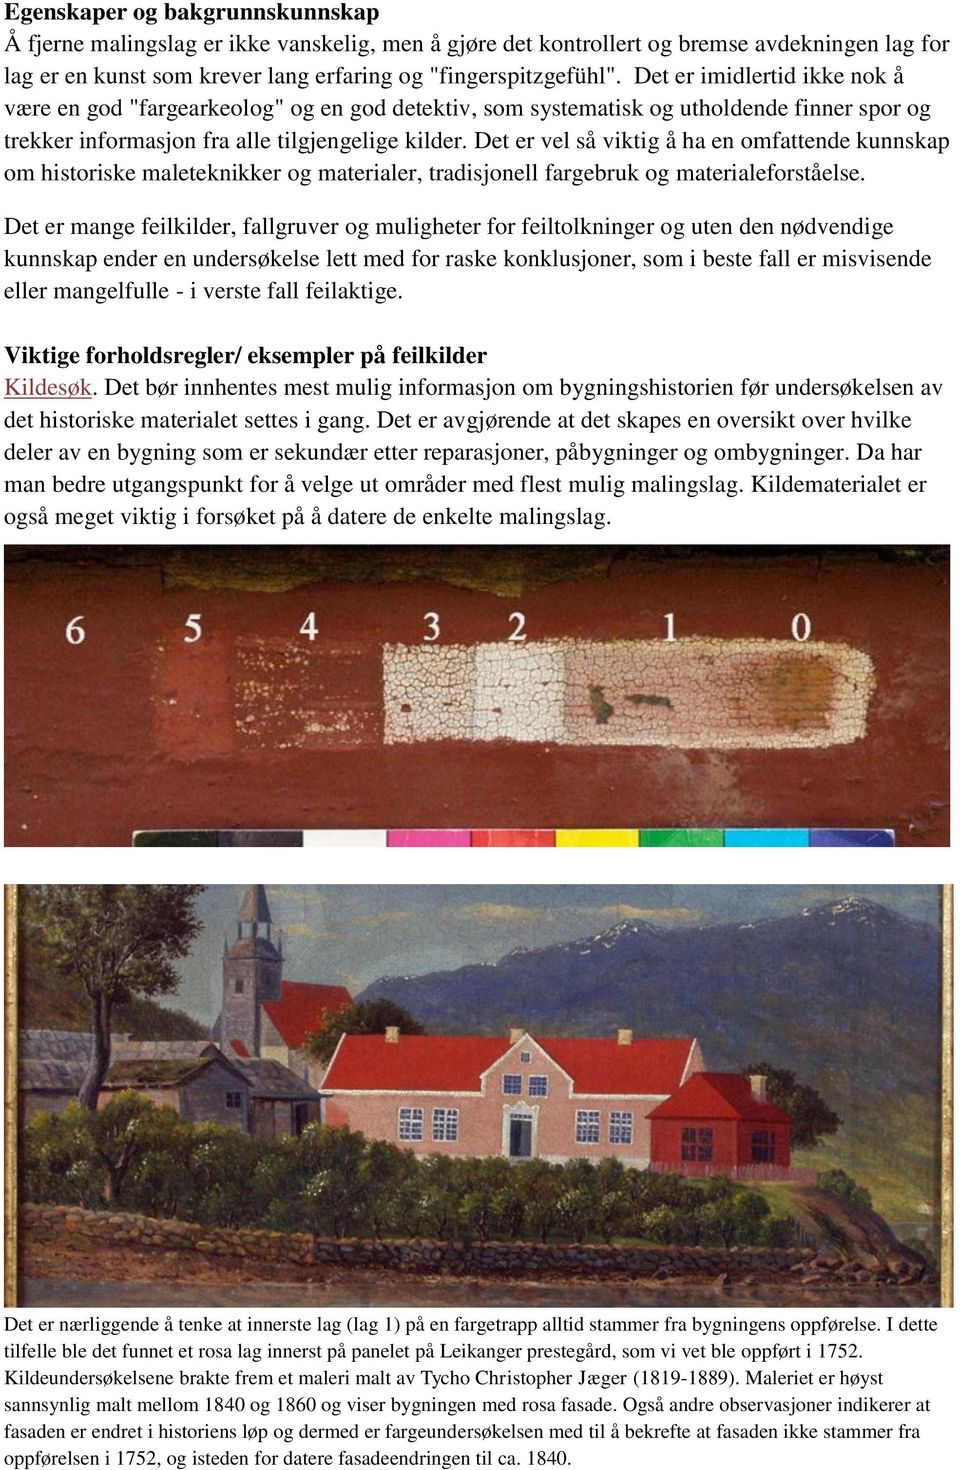 Det er vel så viktig å ha en omfattende kunnskap om historiske maleteknikker og materialer, tradisjonell fargebruk og materialeforståelse.